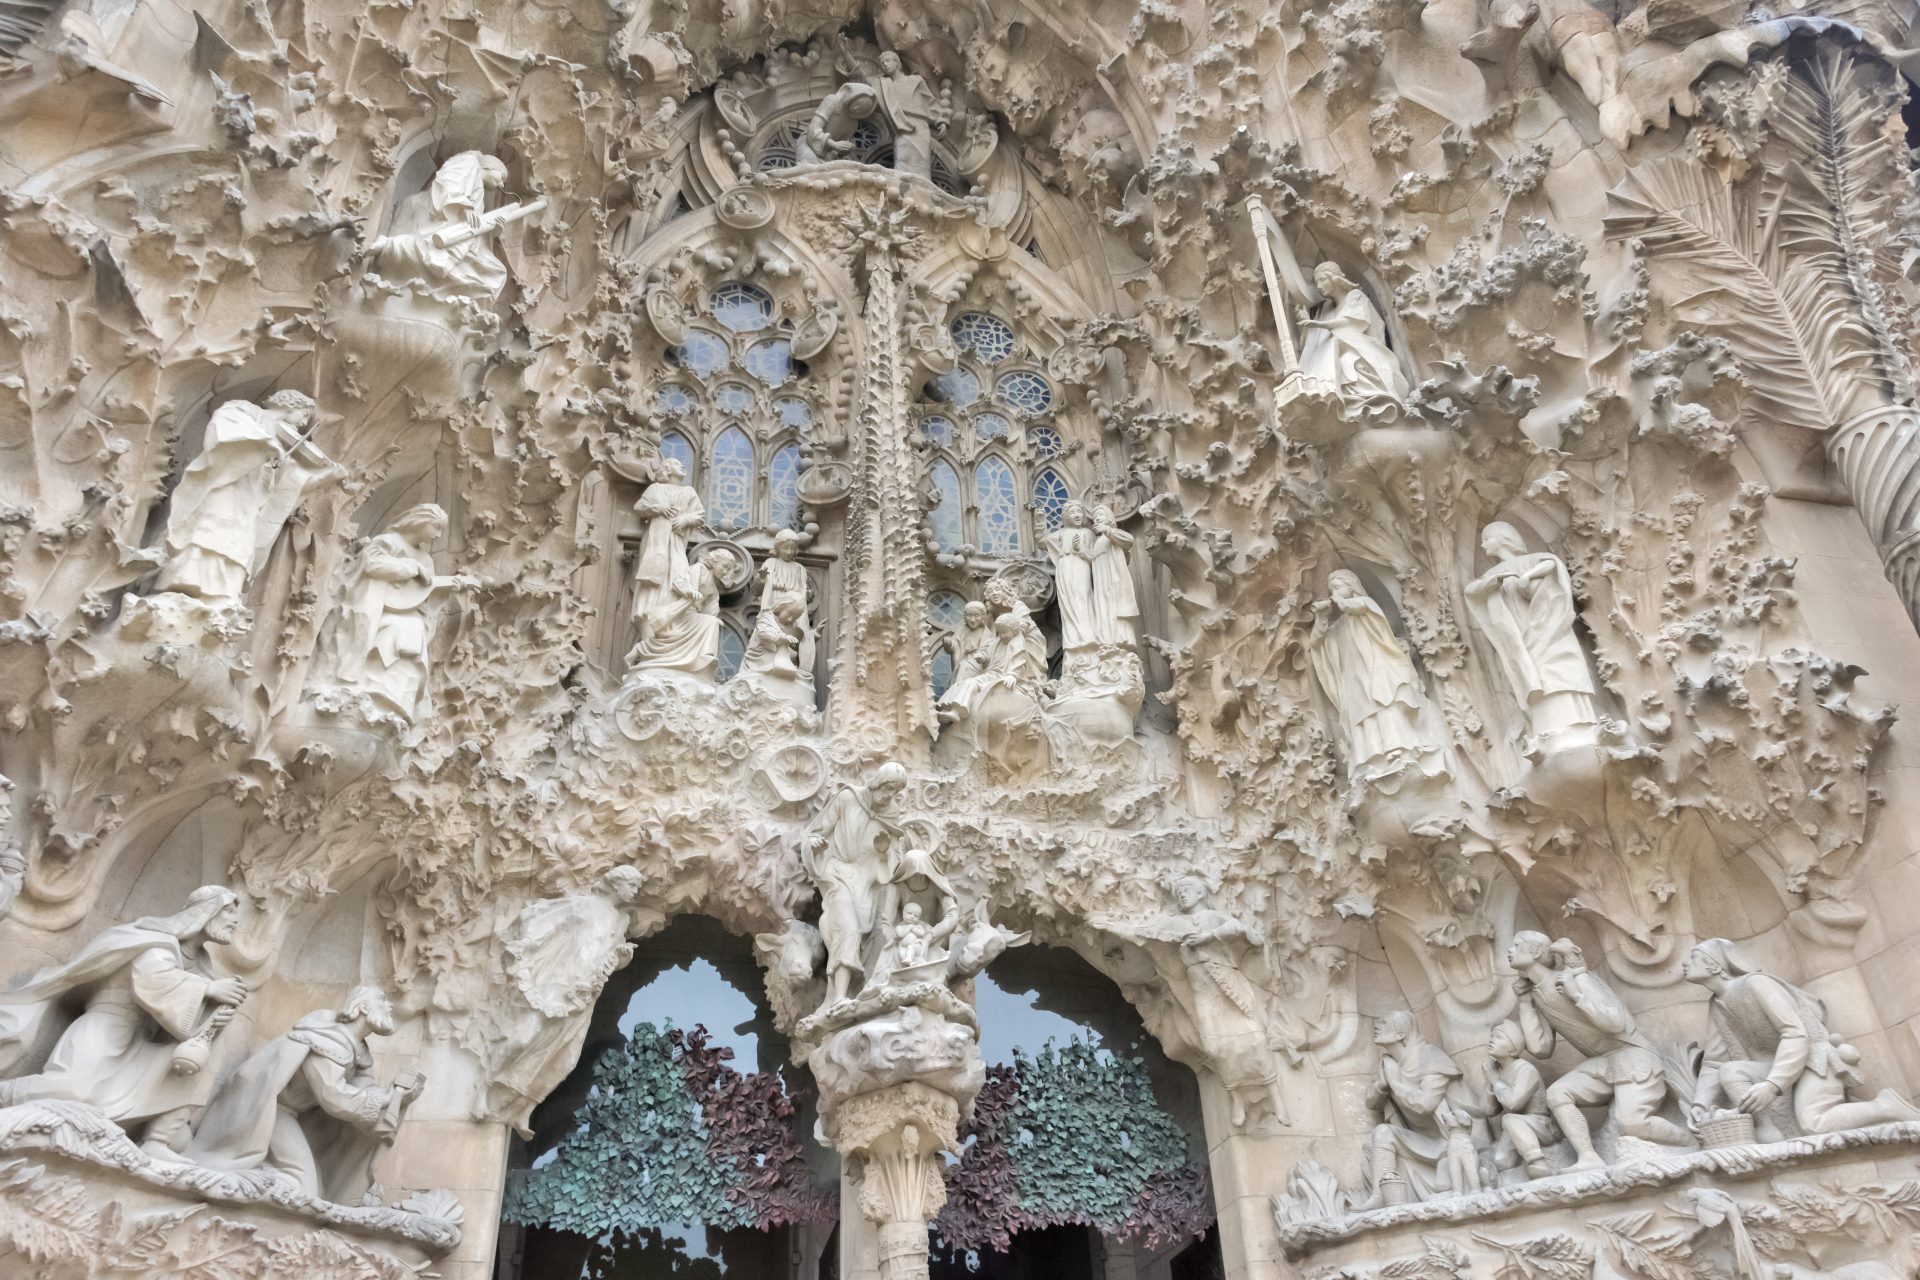 The facades of the Sagrada Familia